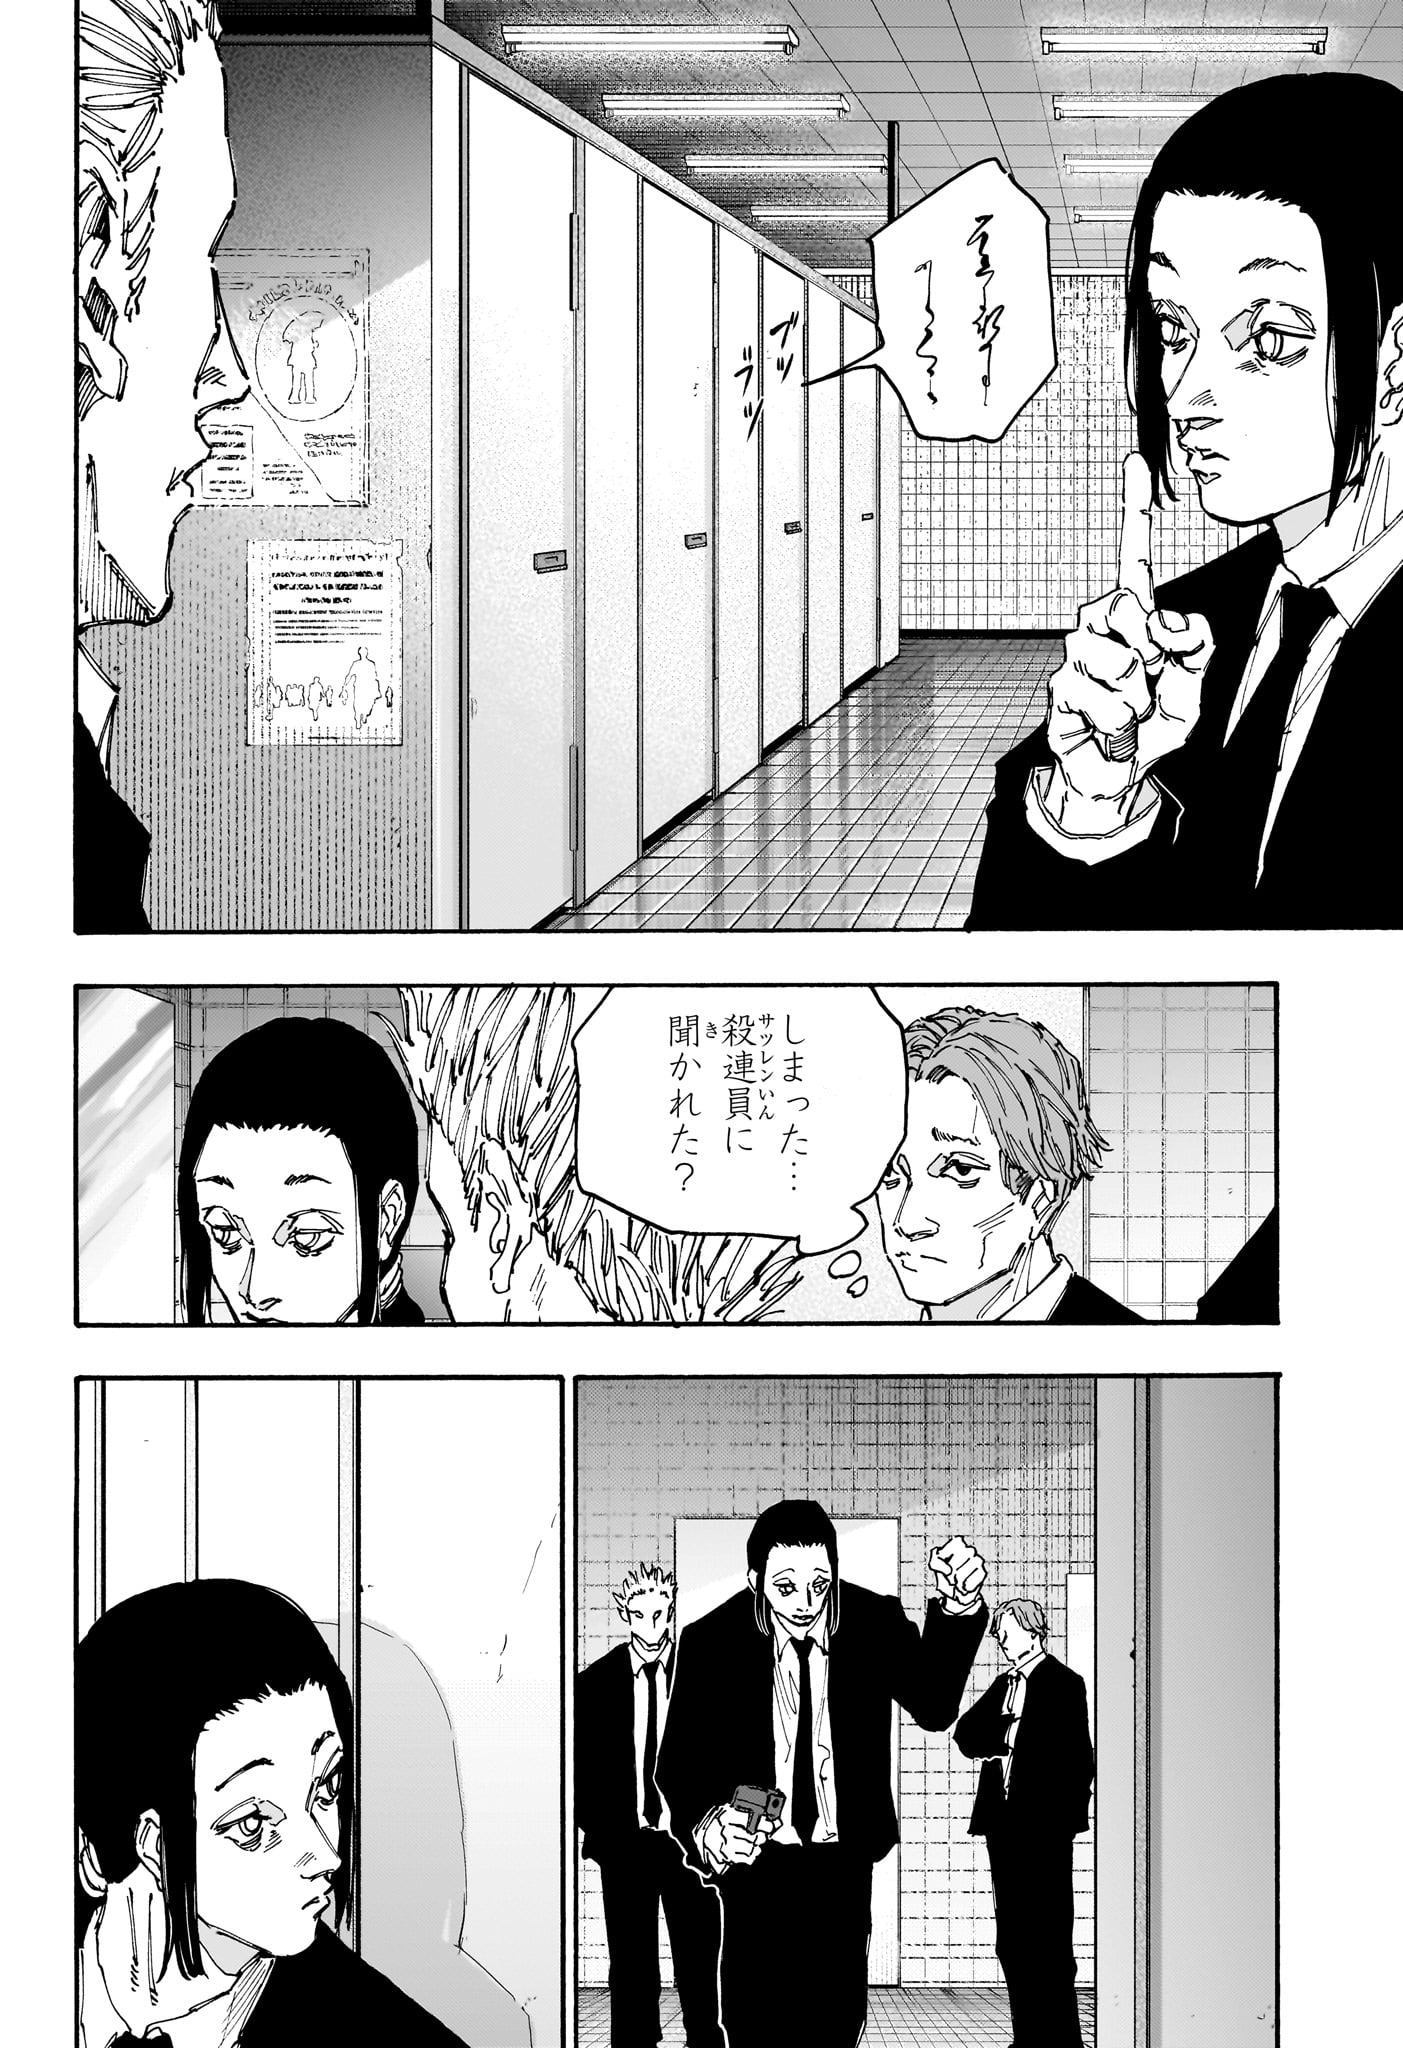 Sakamoto Days - Chapter 163 - Page 2